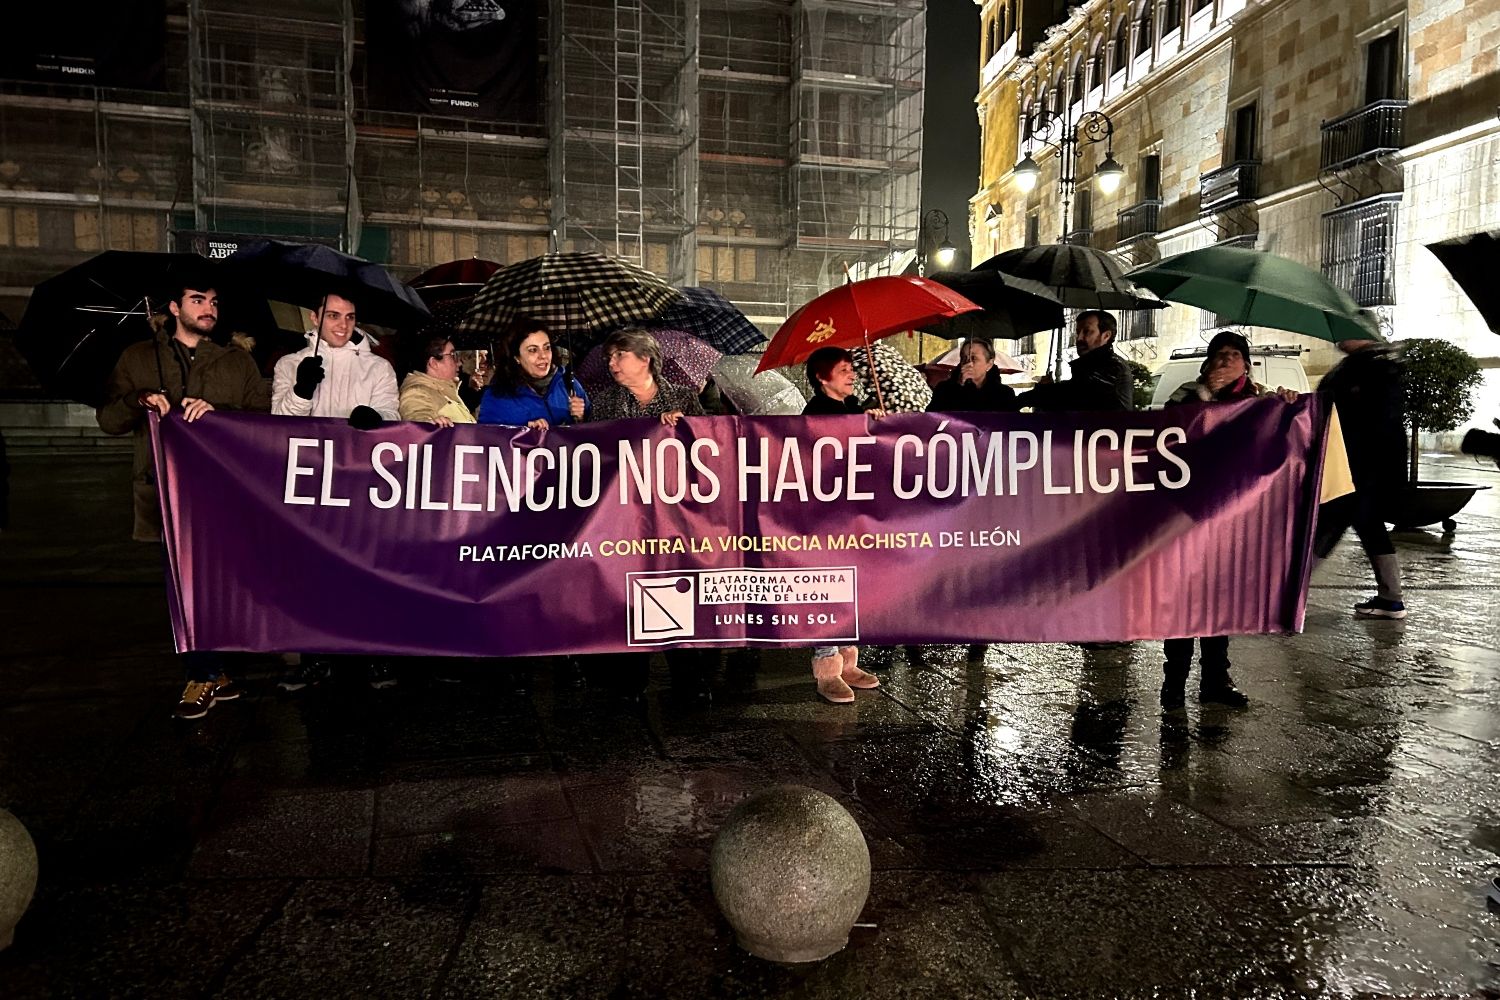 La Plataforma contra la Violencia Machista de León convoca hoy un nuevo ‘Lunes sin sol’